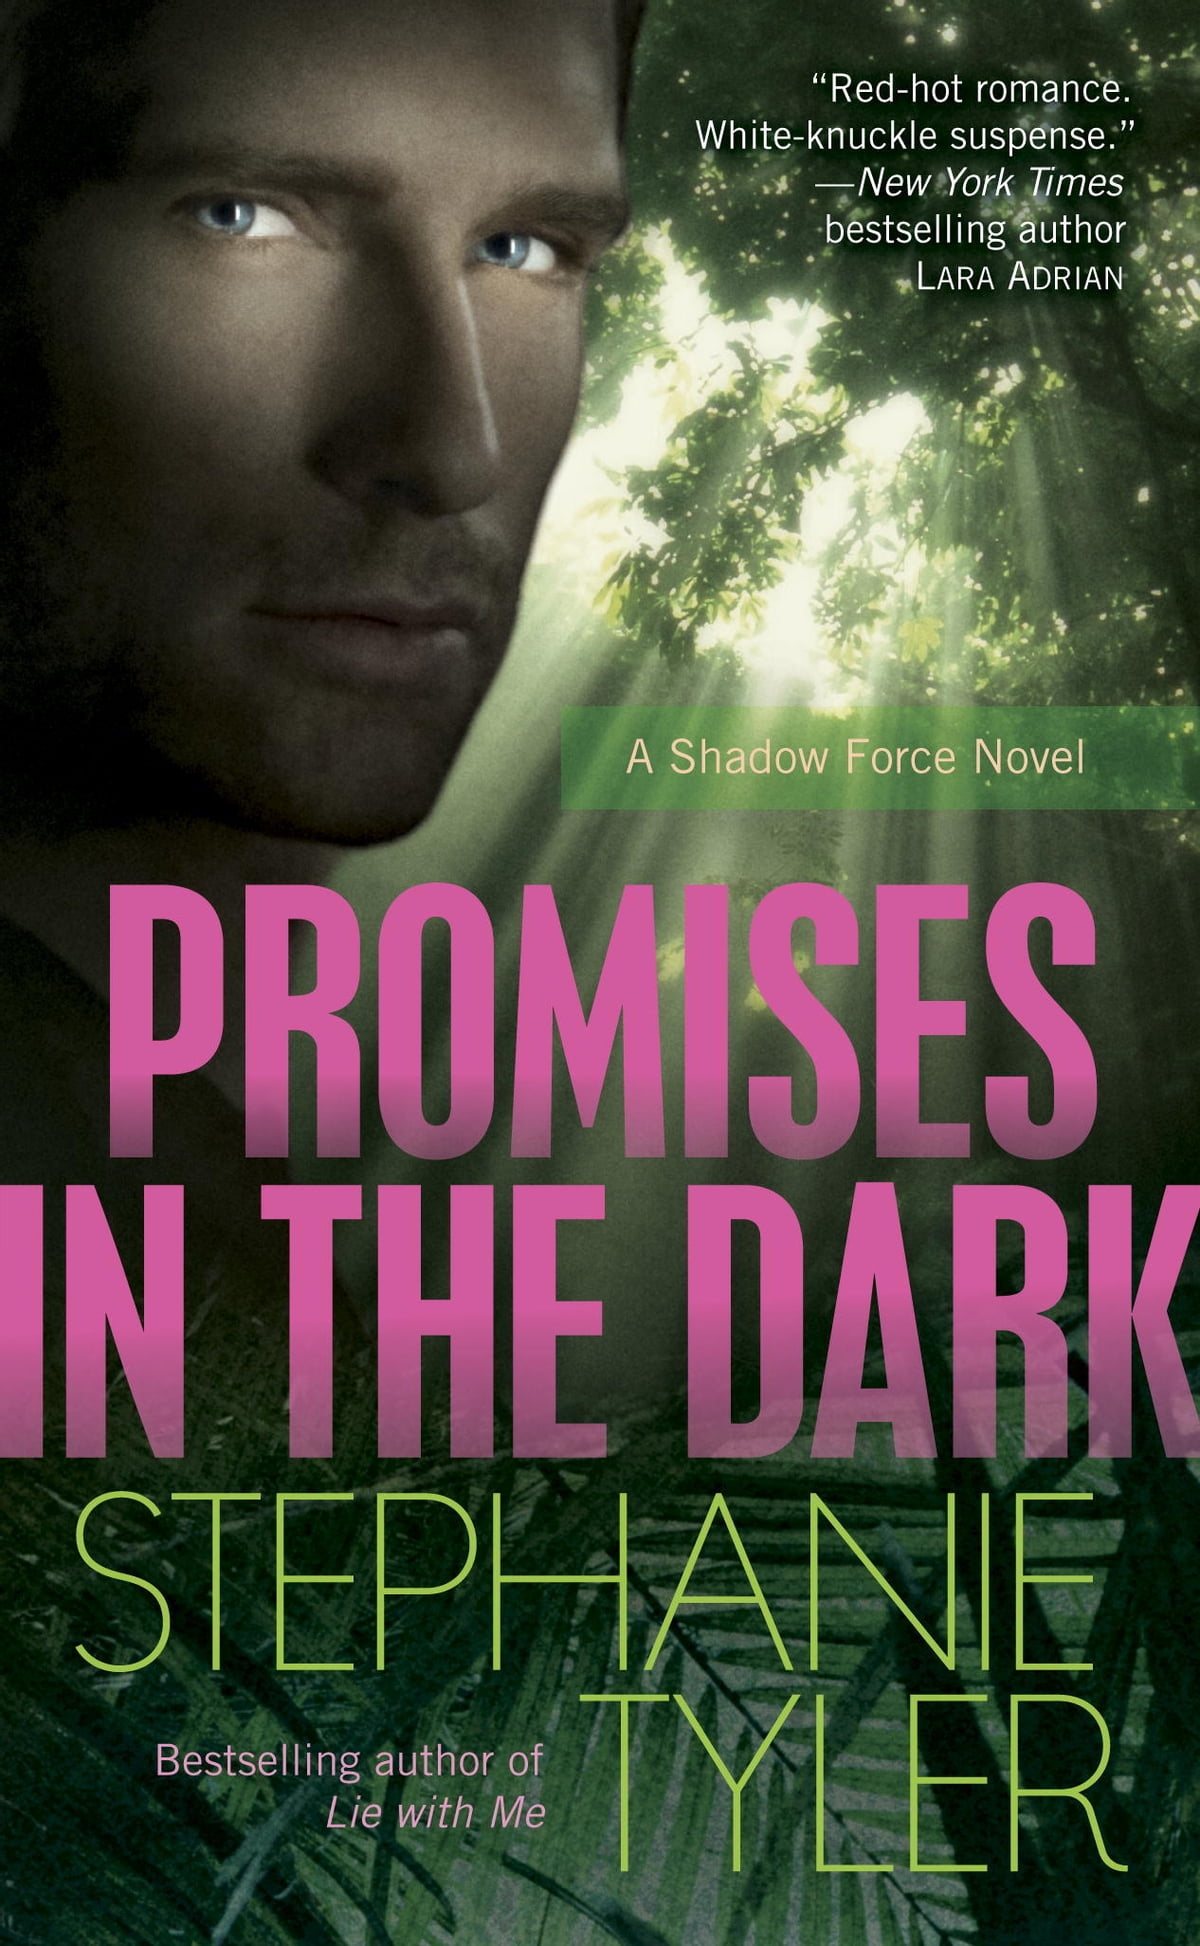 Tyler Stephanie Promises in the Dark: A Shadow Force Novel 